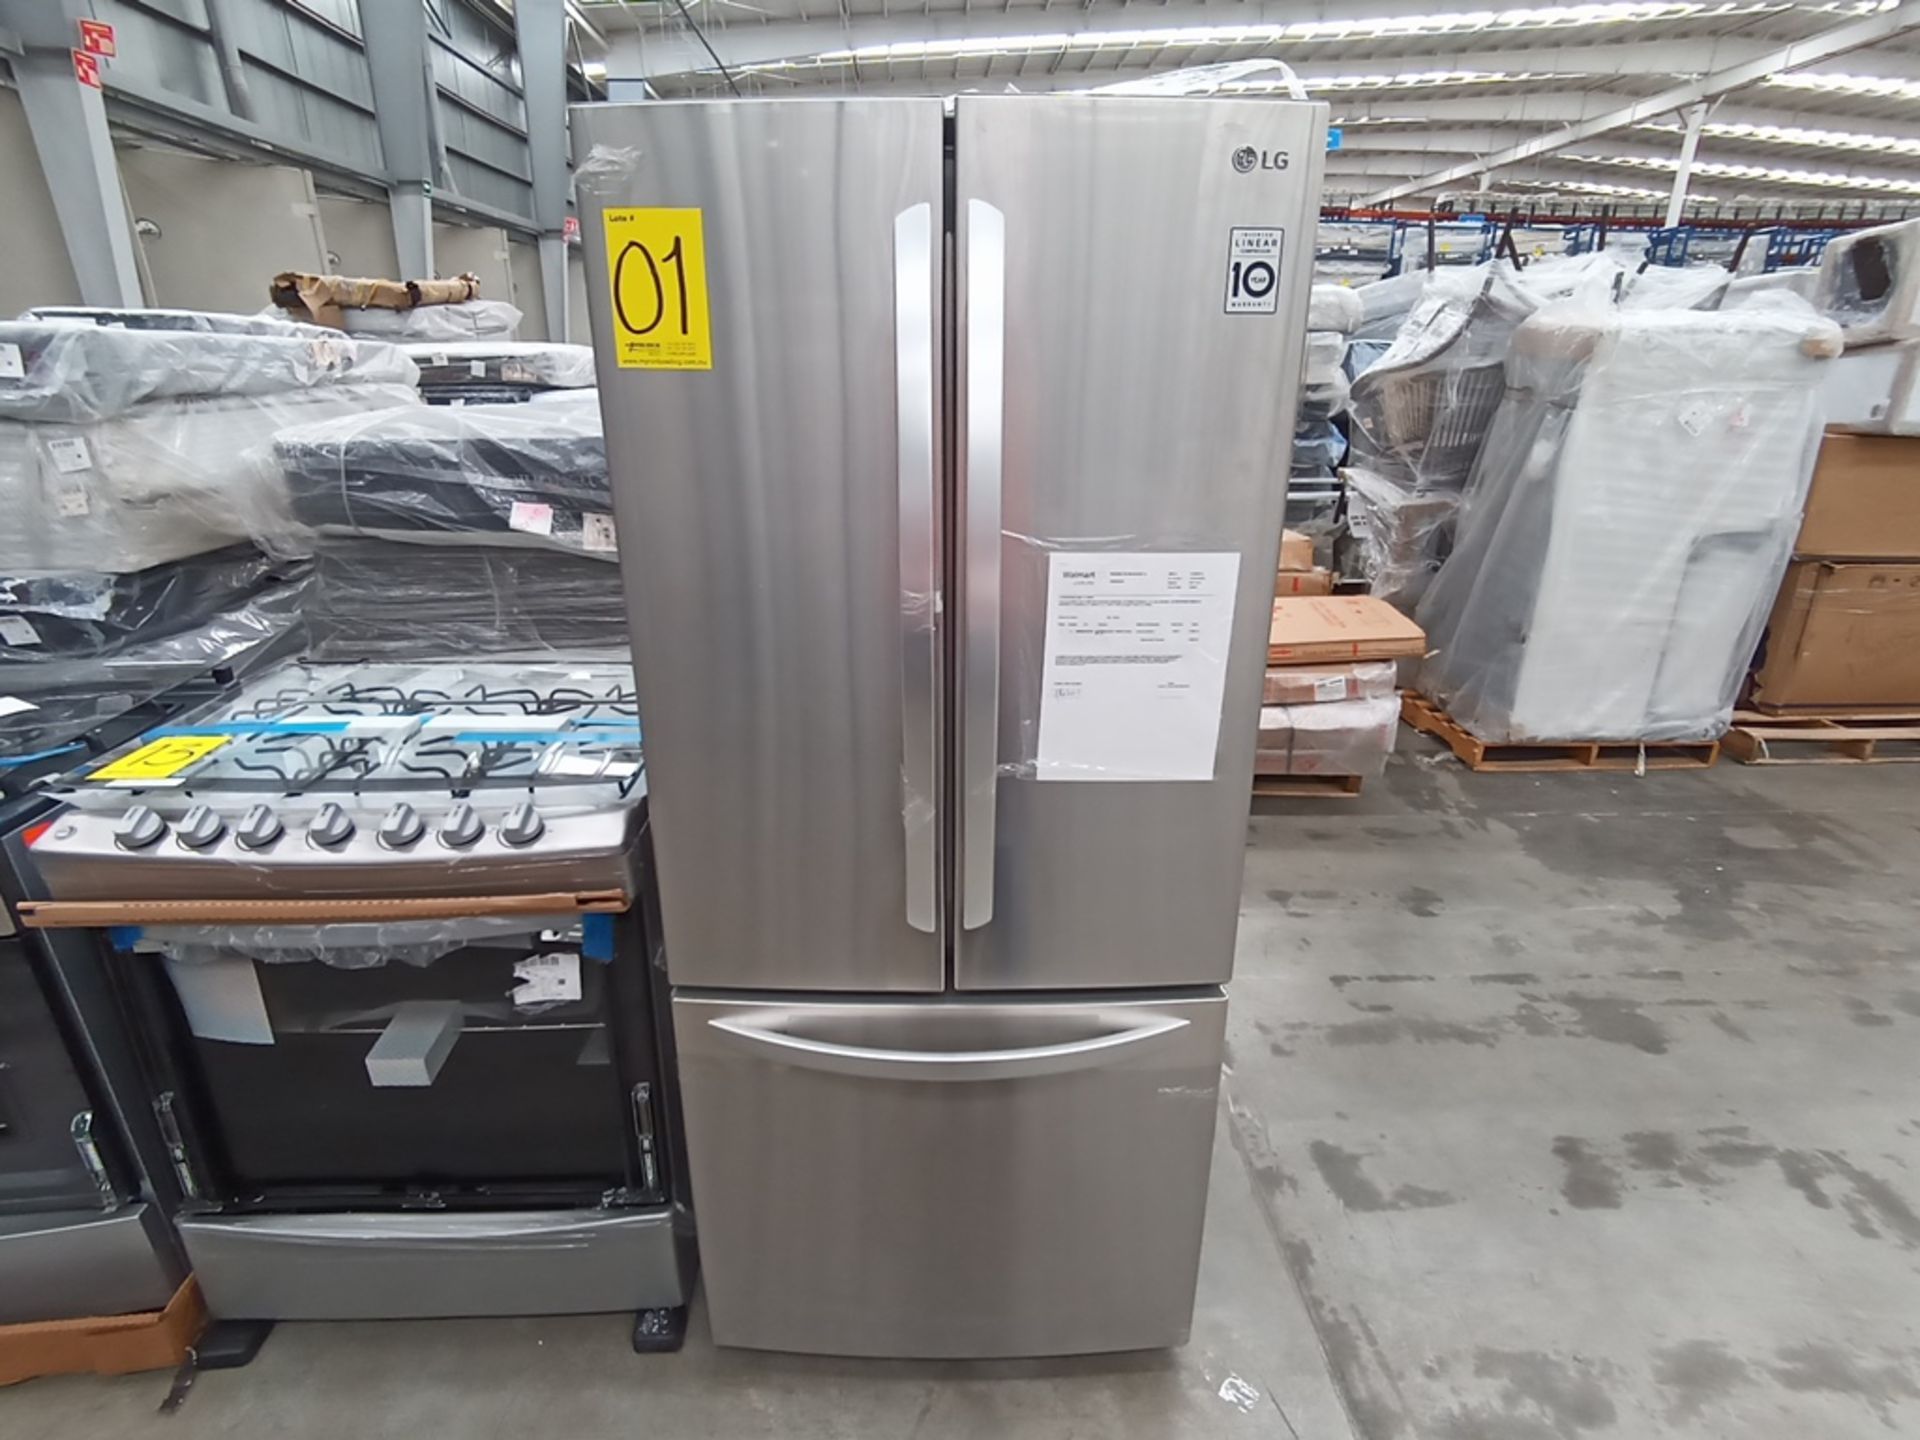 1 Refrigerador con dispensador de agua, Marca LG, Modelo GF22BGSK, Serie 112MRYA05834, Color Gris. - Image 5 of 10